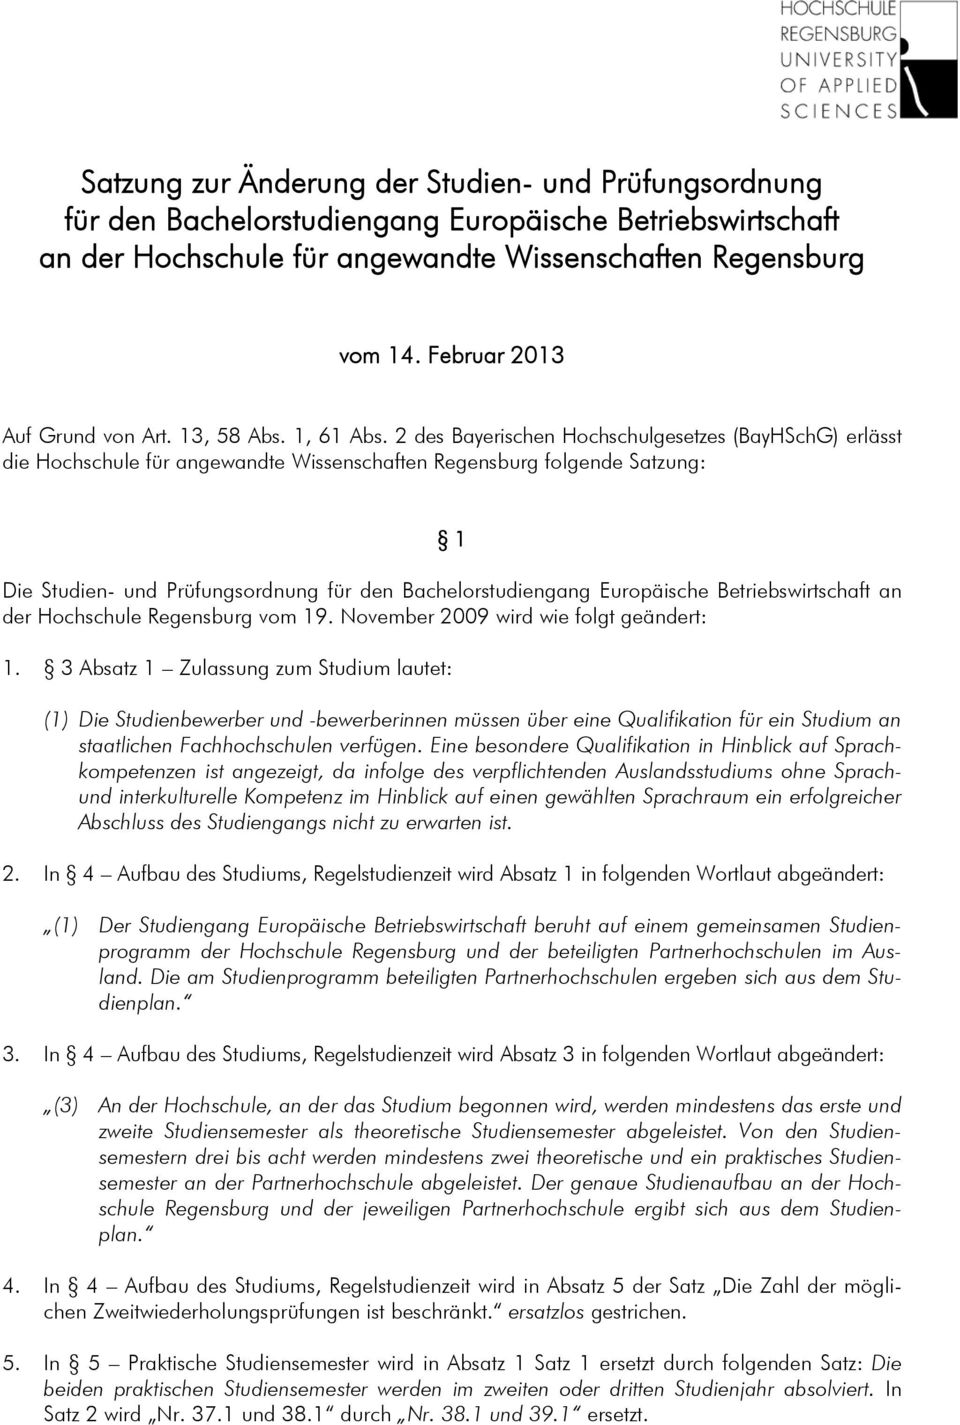 2 des Bayerischen Hochschulgesetzes (BayHSchG erlässt die Hochschule für angewandte Wissenschaften Regensburg folgende Satzung: 1 Die Studien- und Prüfungsordnung für den Bachelorstudiengang